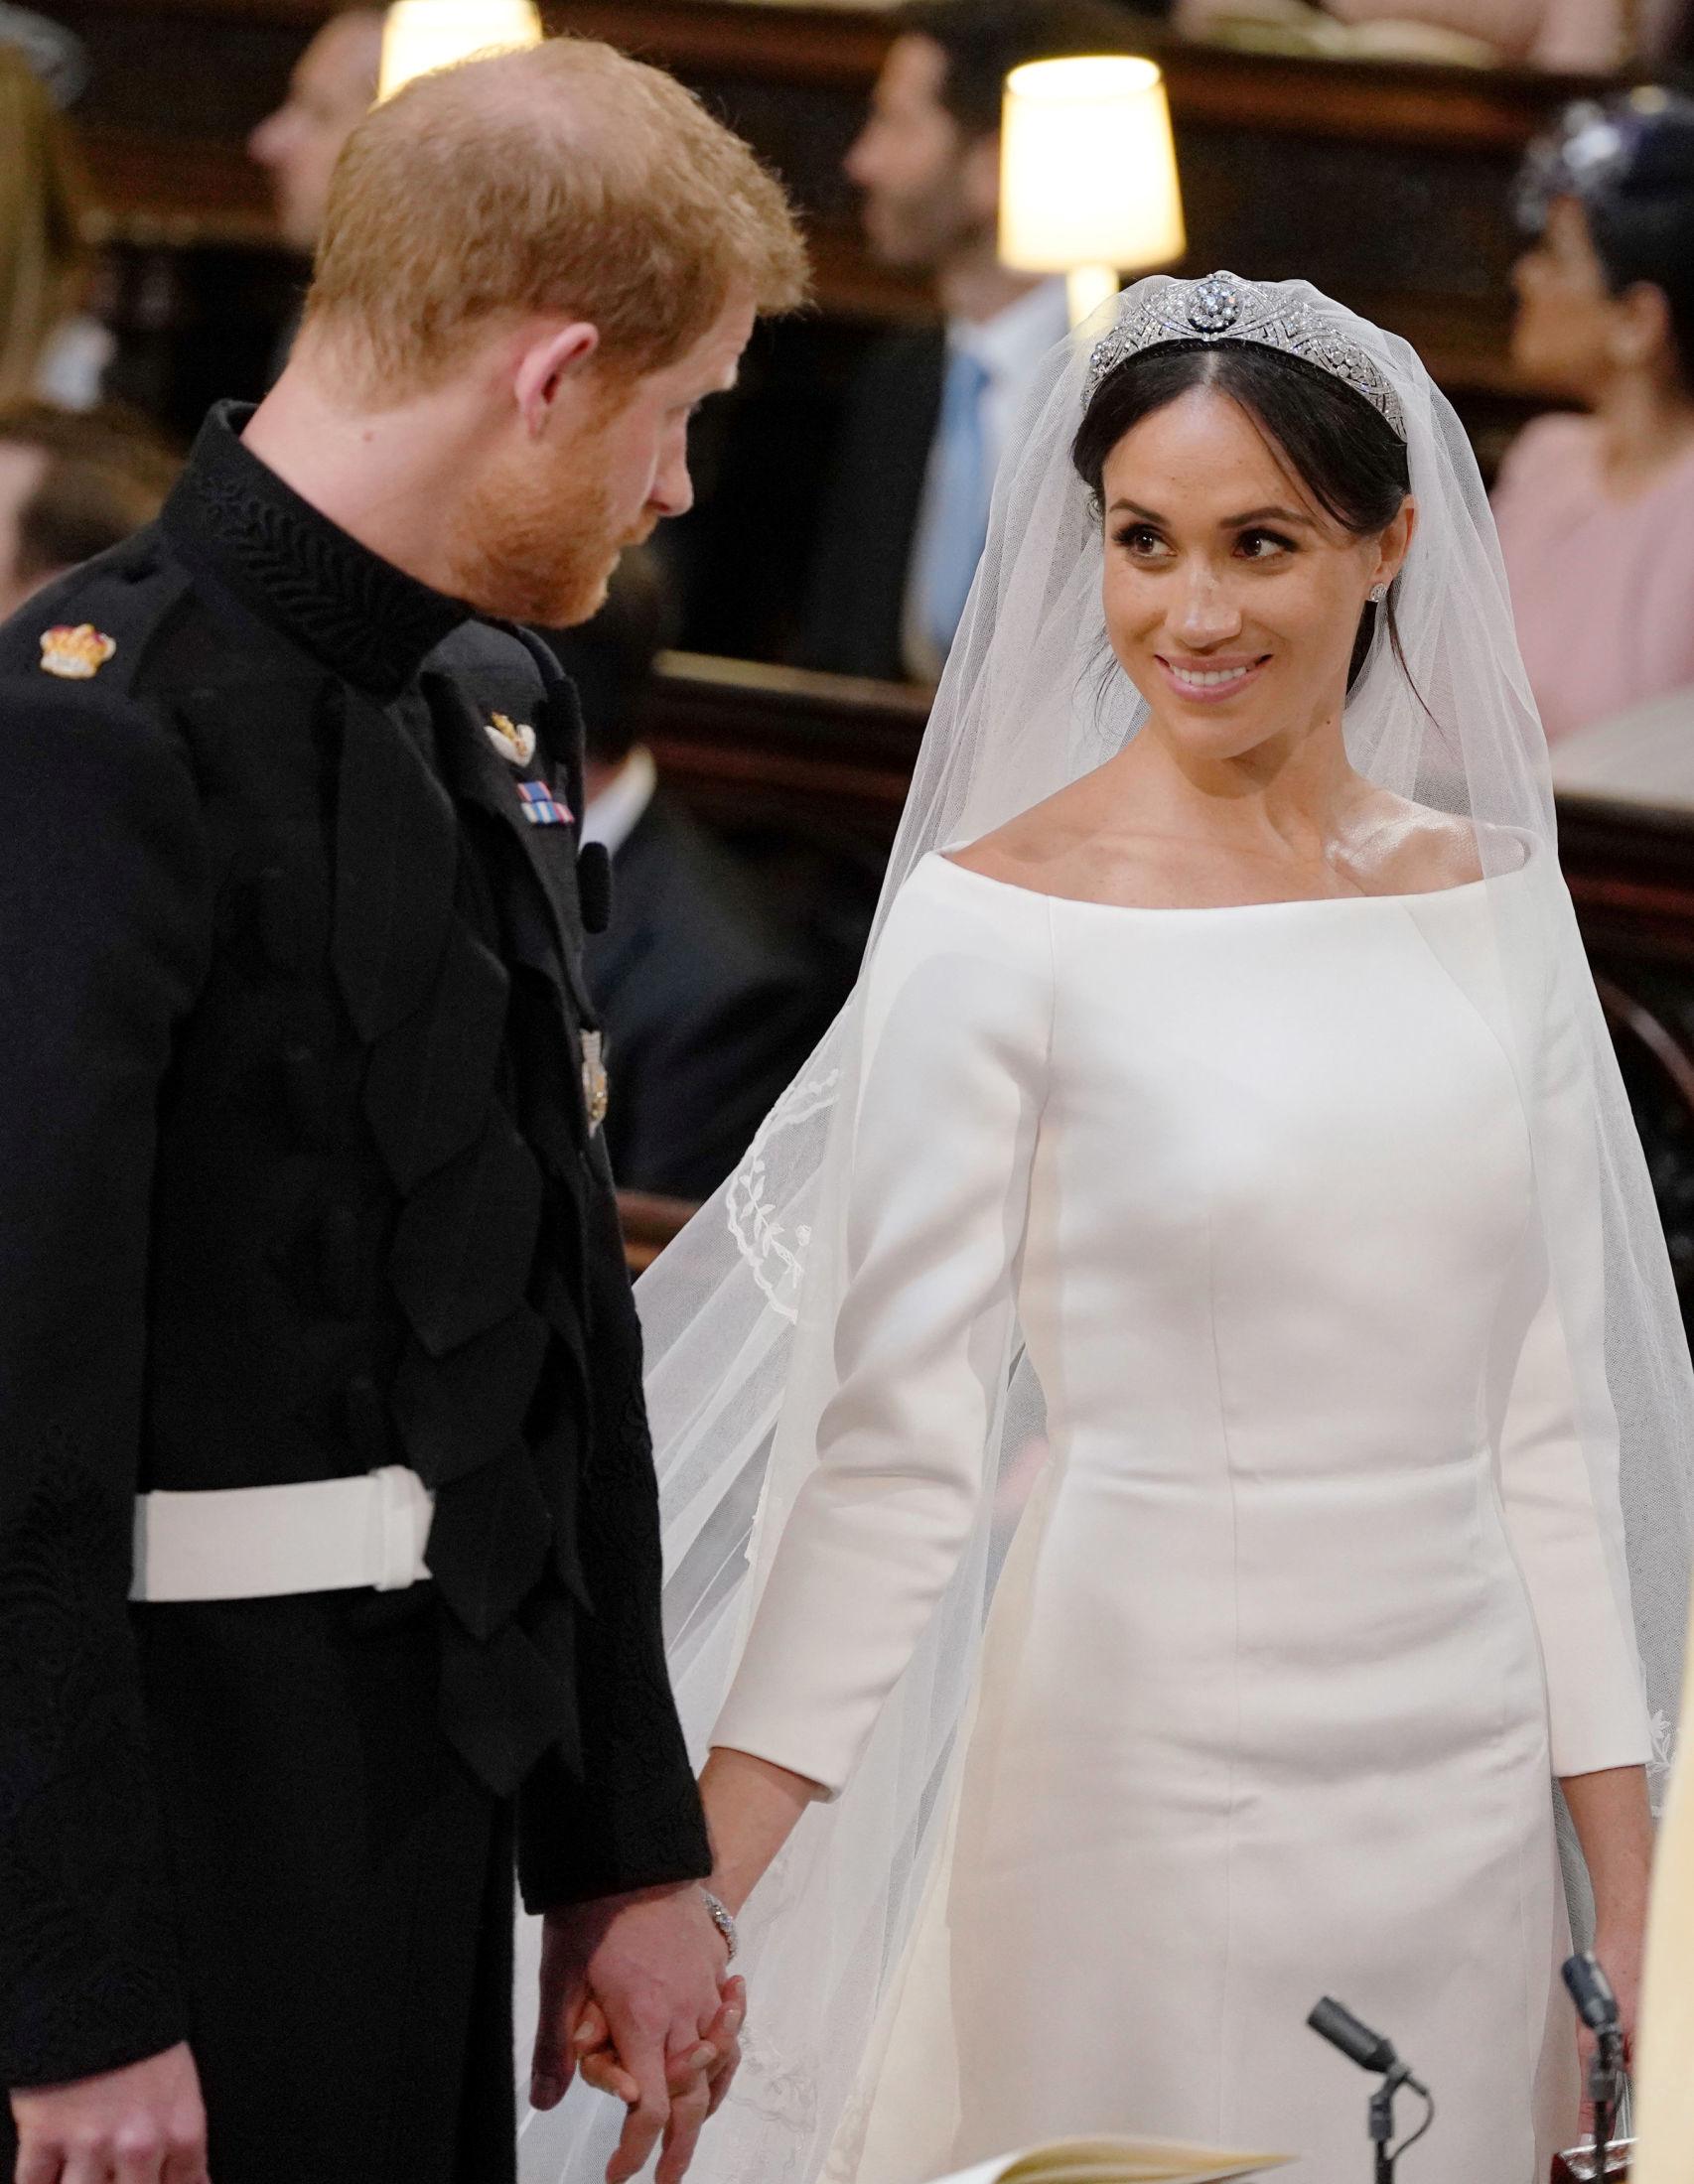 FORELSKET: – Du ser fantastisk ut, sa brudgommen prins Harry til sin utkårede ved alteret. Foto: Reuters.